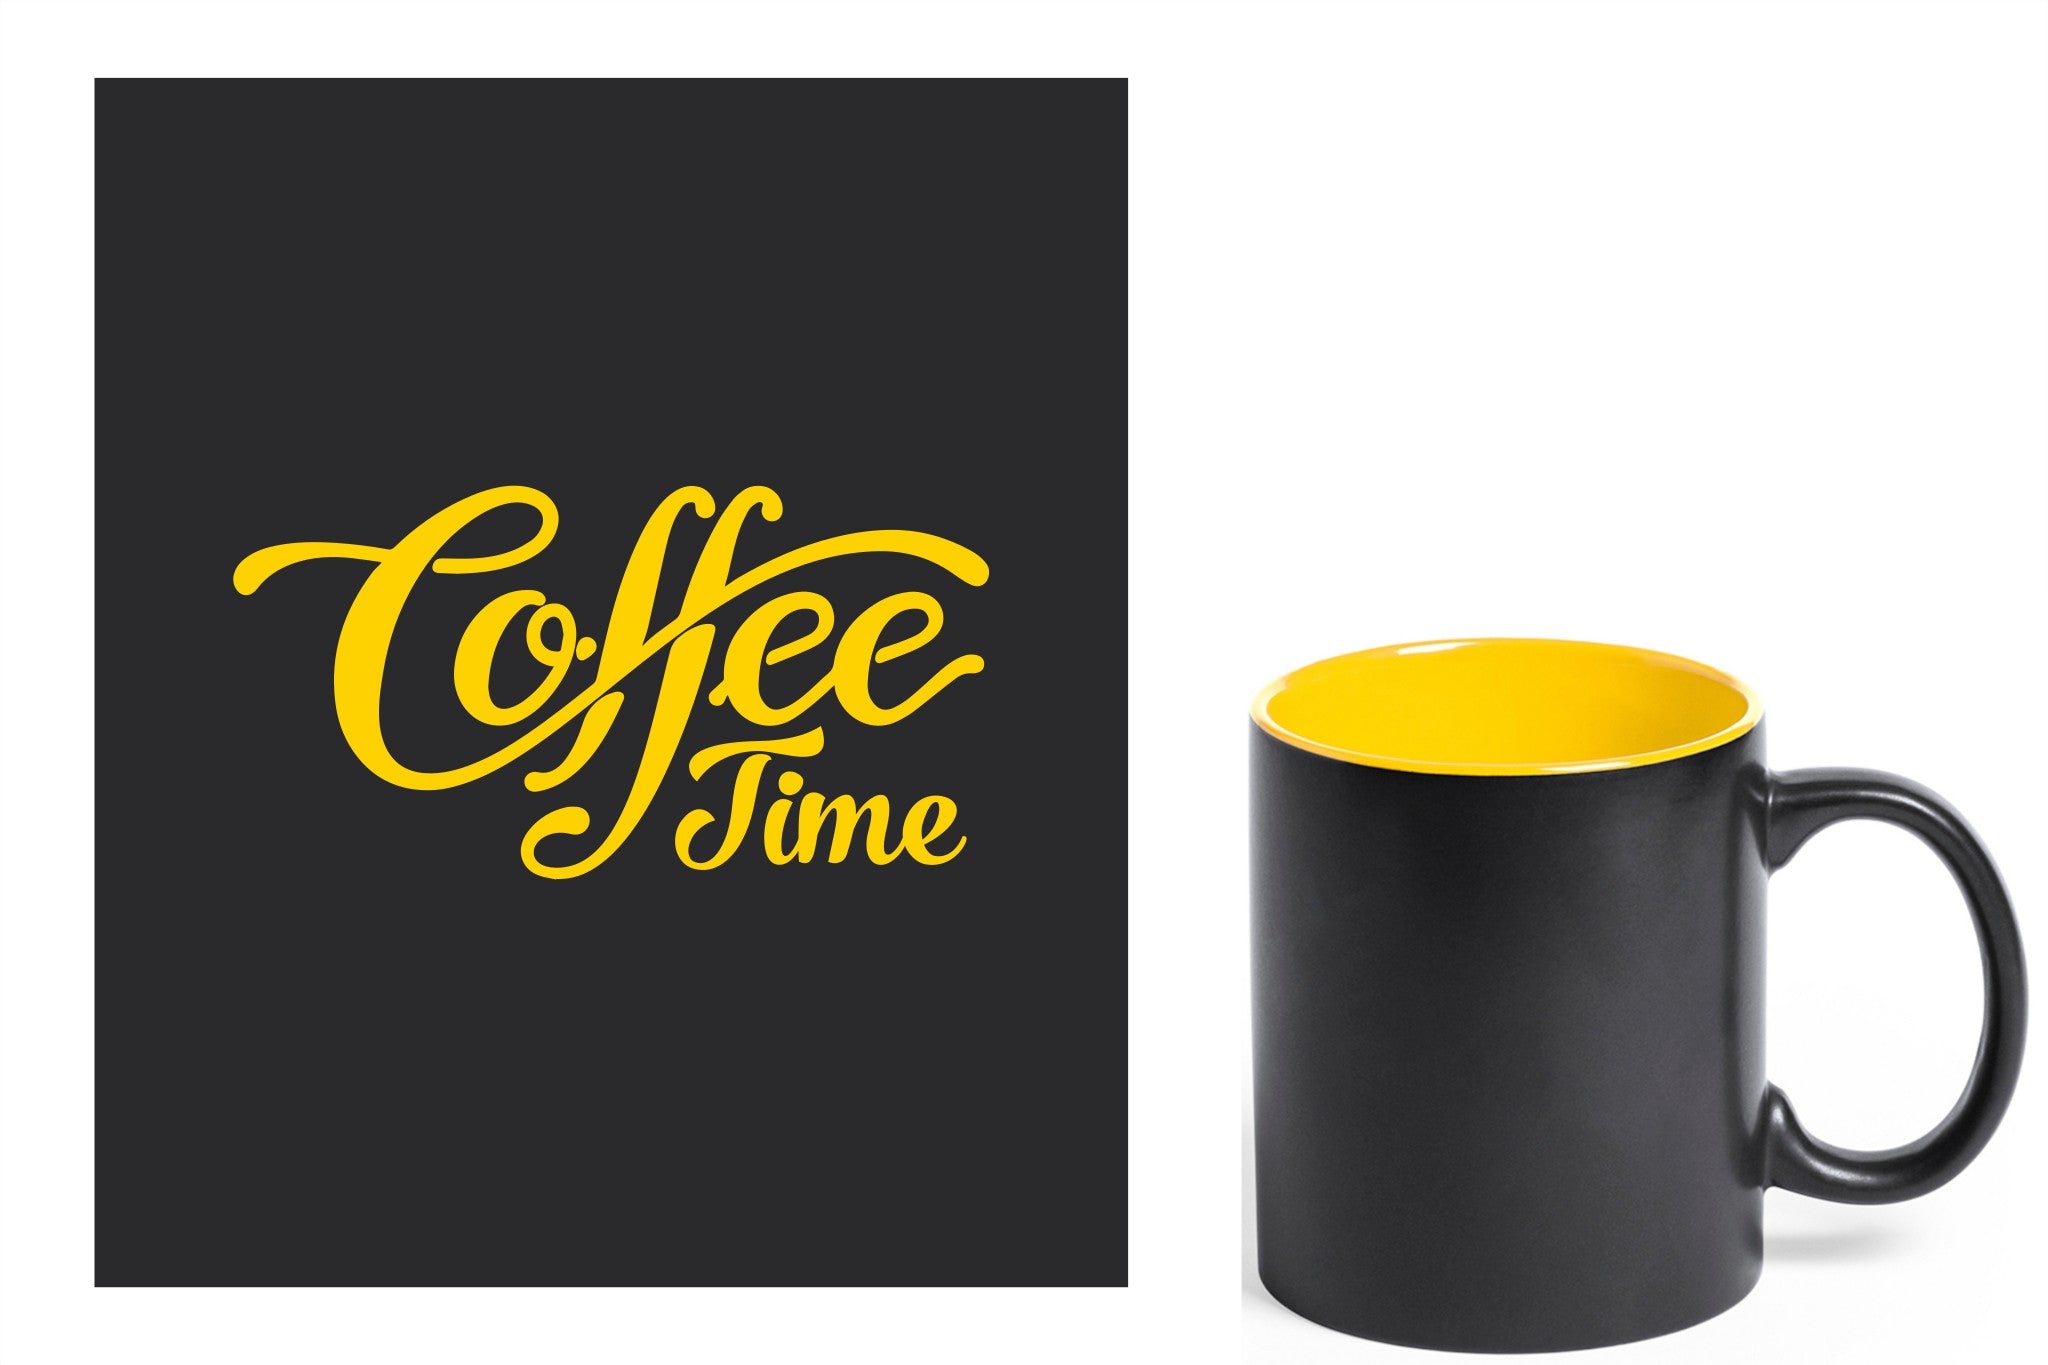 zwarte keramische mok met gele gravure  'Coffee time'.